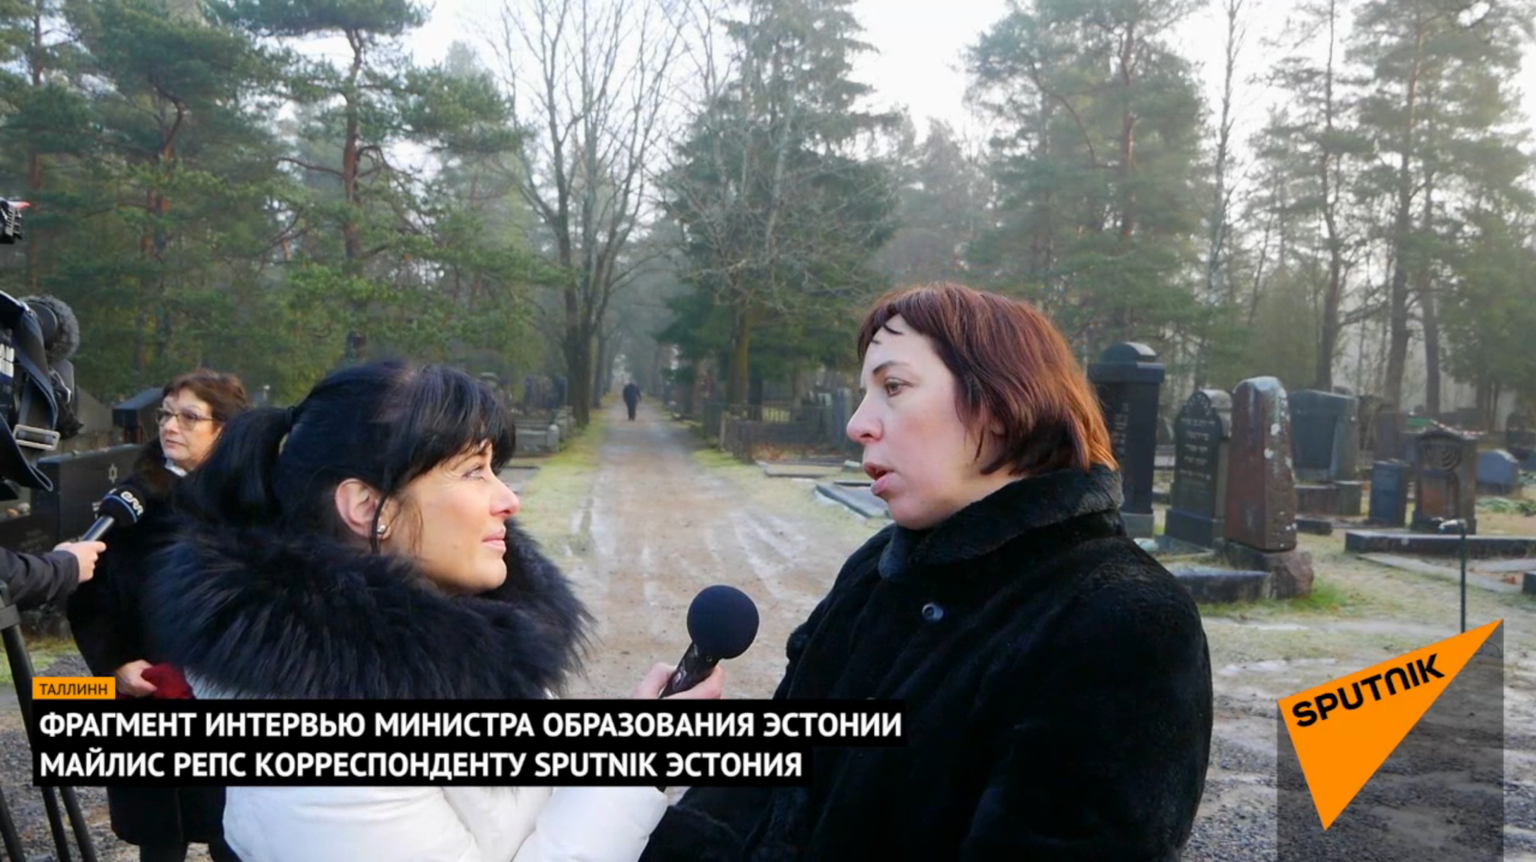 Kuvatõmmis videost, kus haridusminister Mailis Reps vestleb Sputniku ajakirjanikuga.